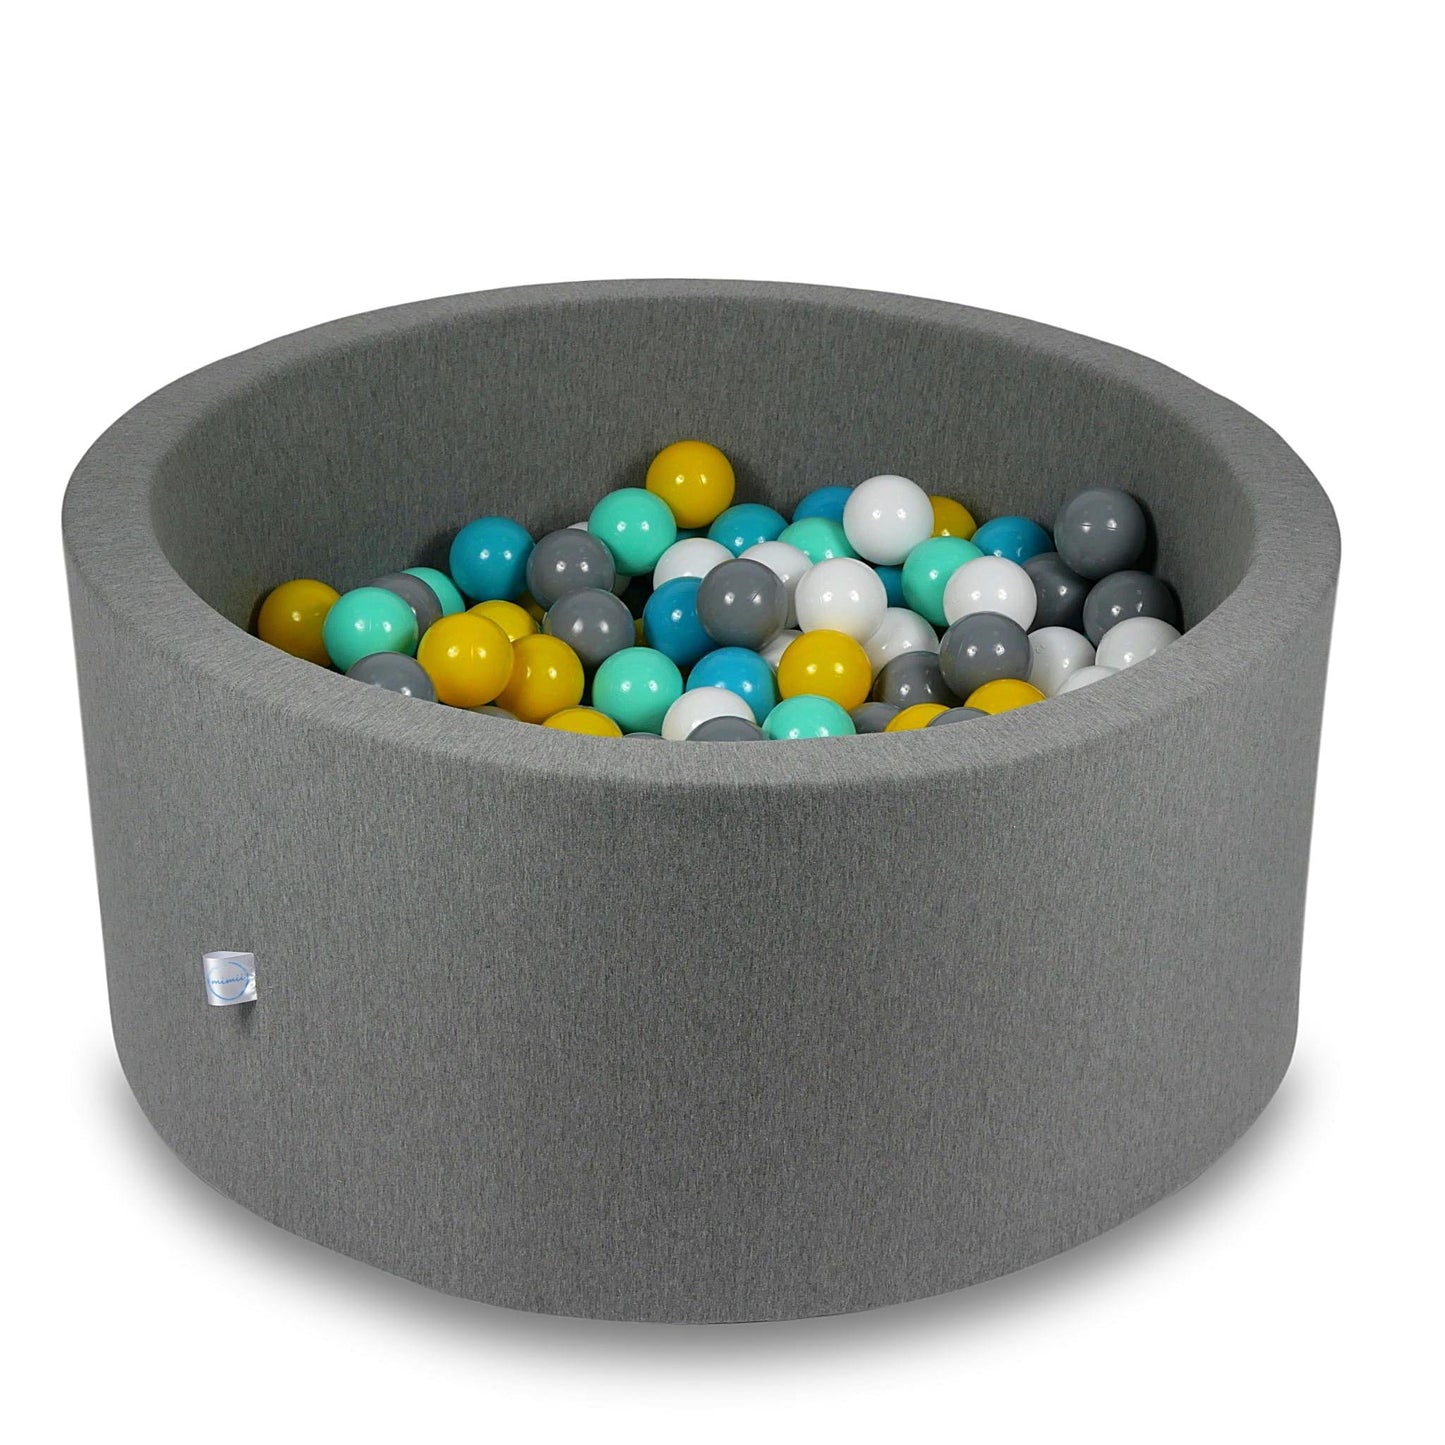 Piscine à Balles 90x40cm grise avec balles 300pcs (blanc, gris, turquoise, jaune, menthe)